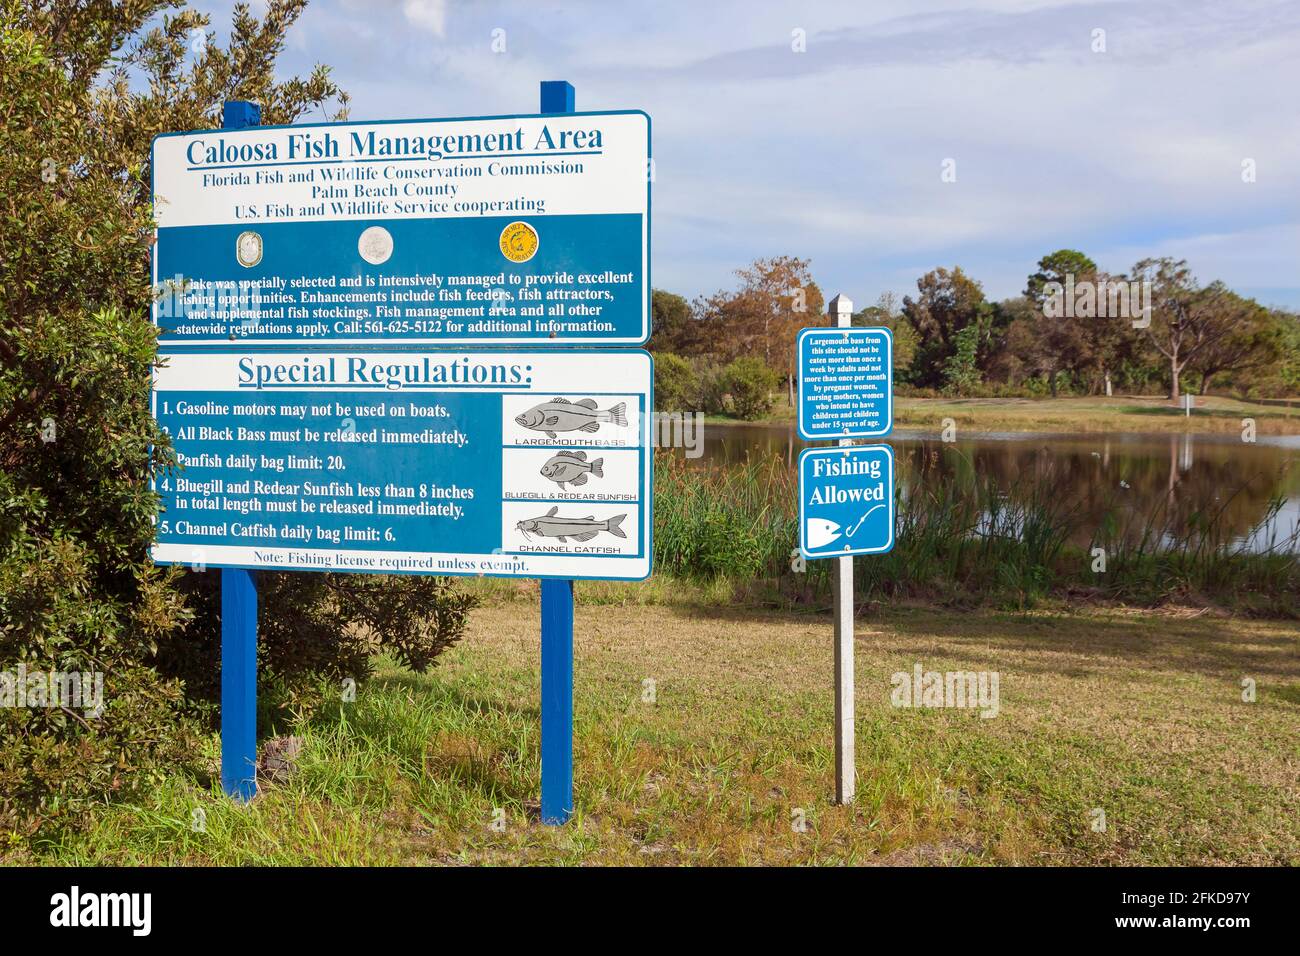 Accedi al Caloosa Park della contea di Palm Beach, Florida, che mostra le regole e le normative per la gestione dei pesci. Foto Stock